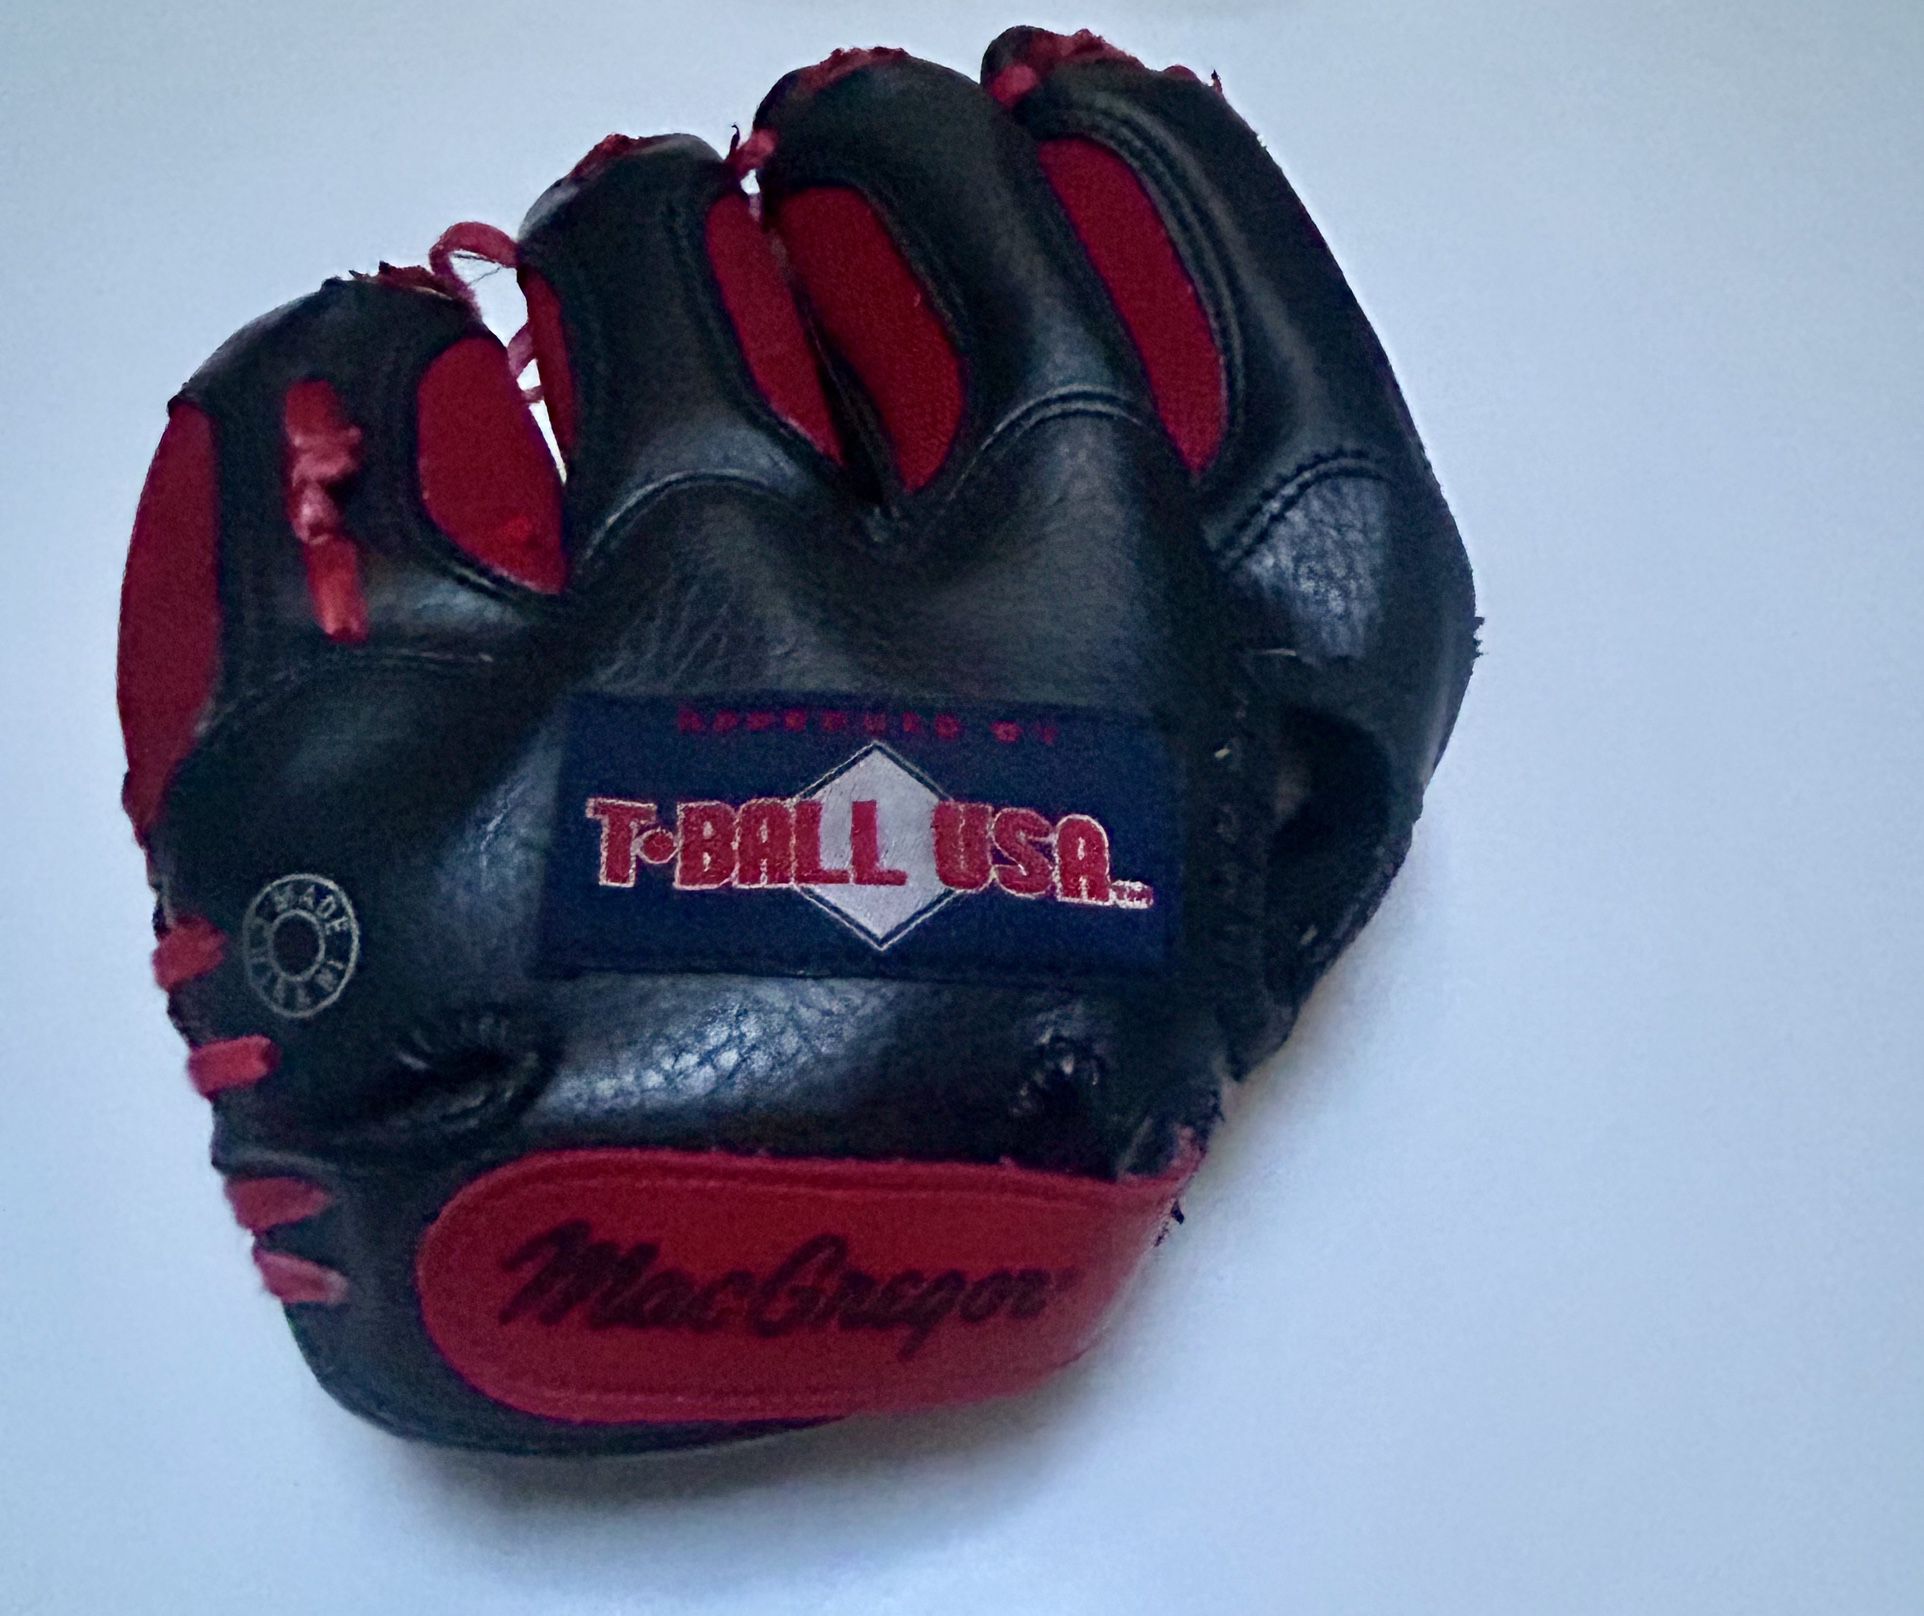 MacGregor T BALL USA Baseball Glove  